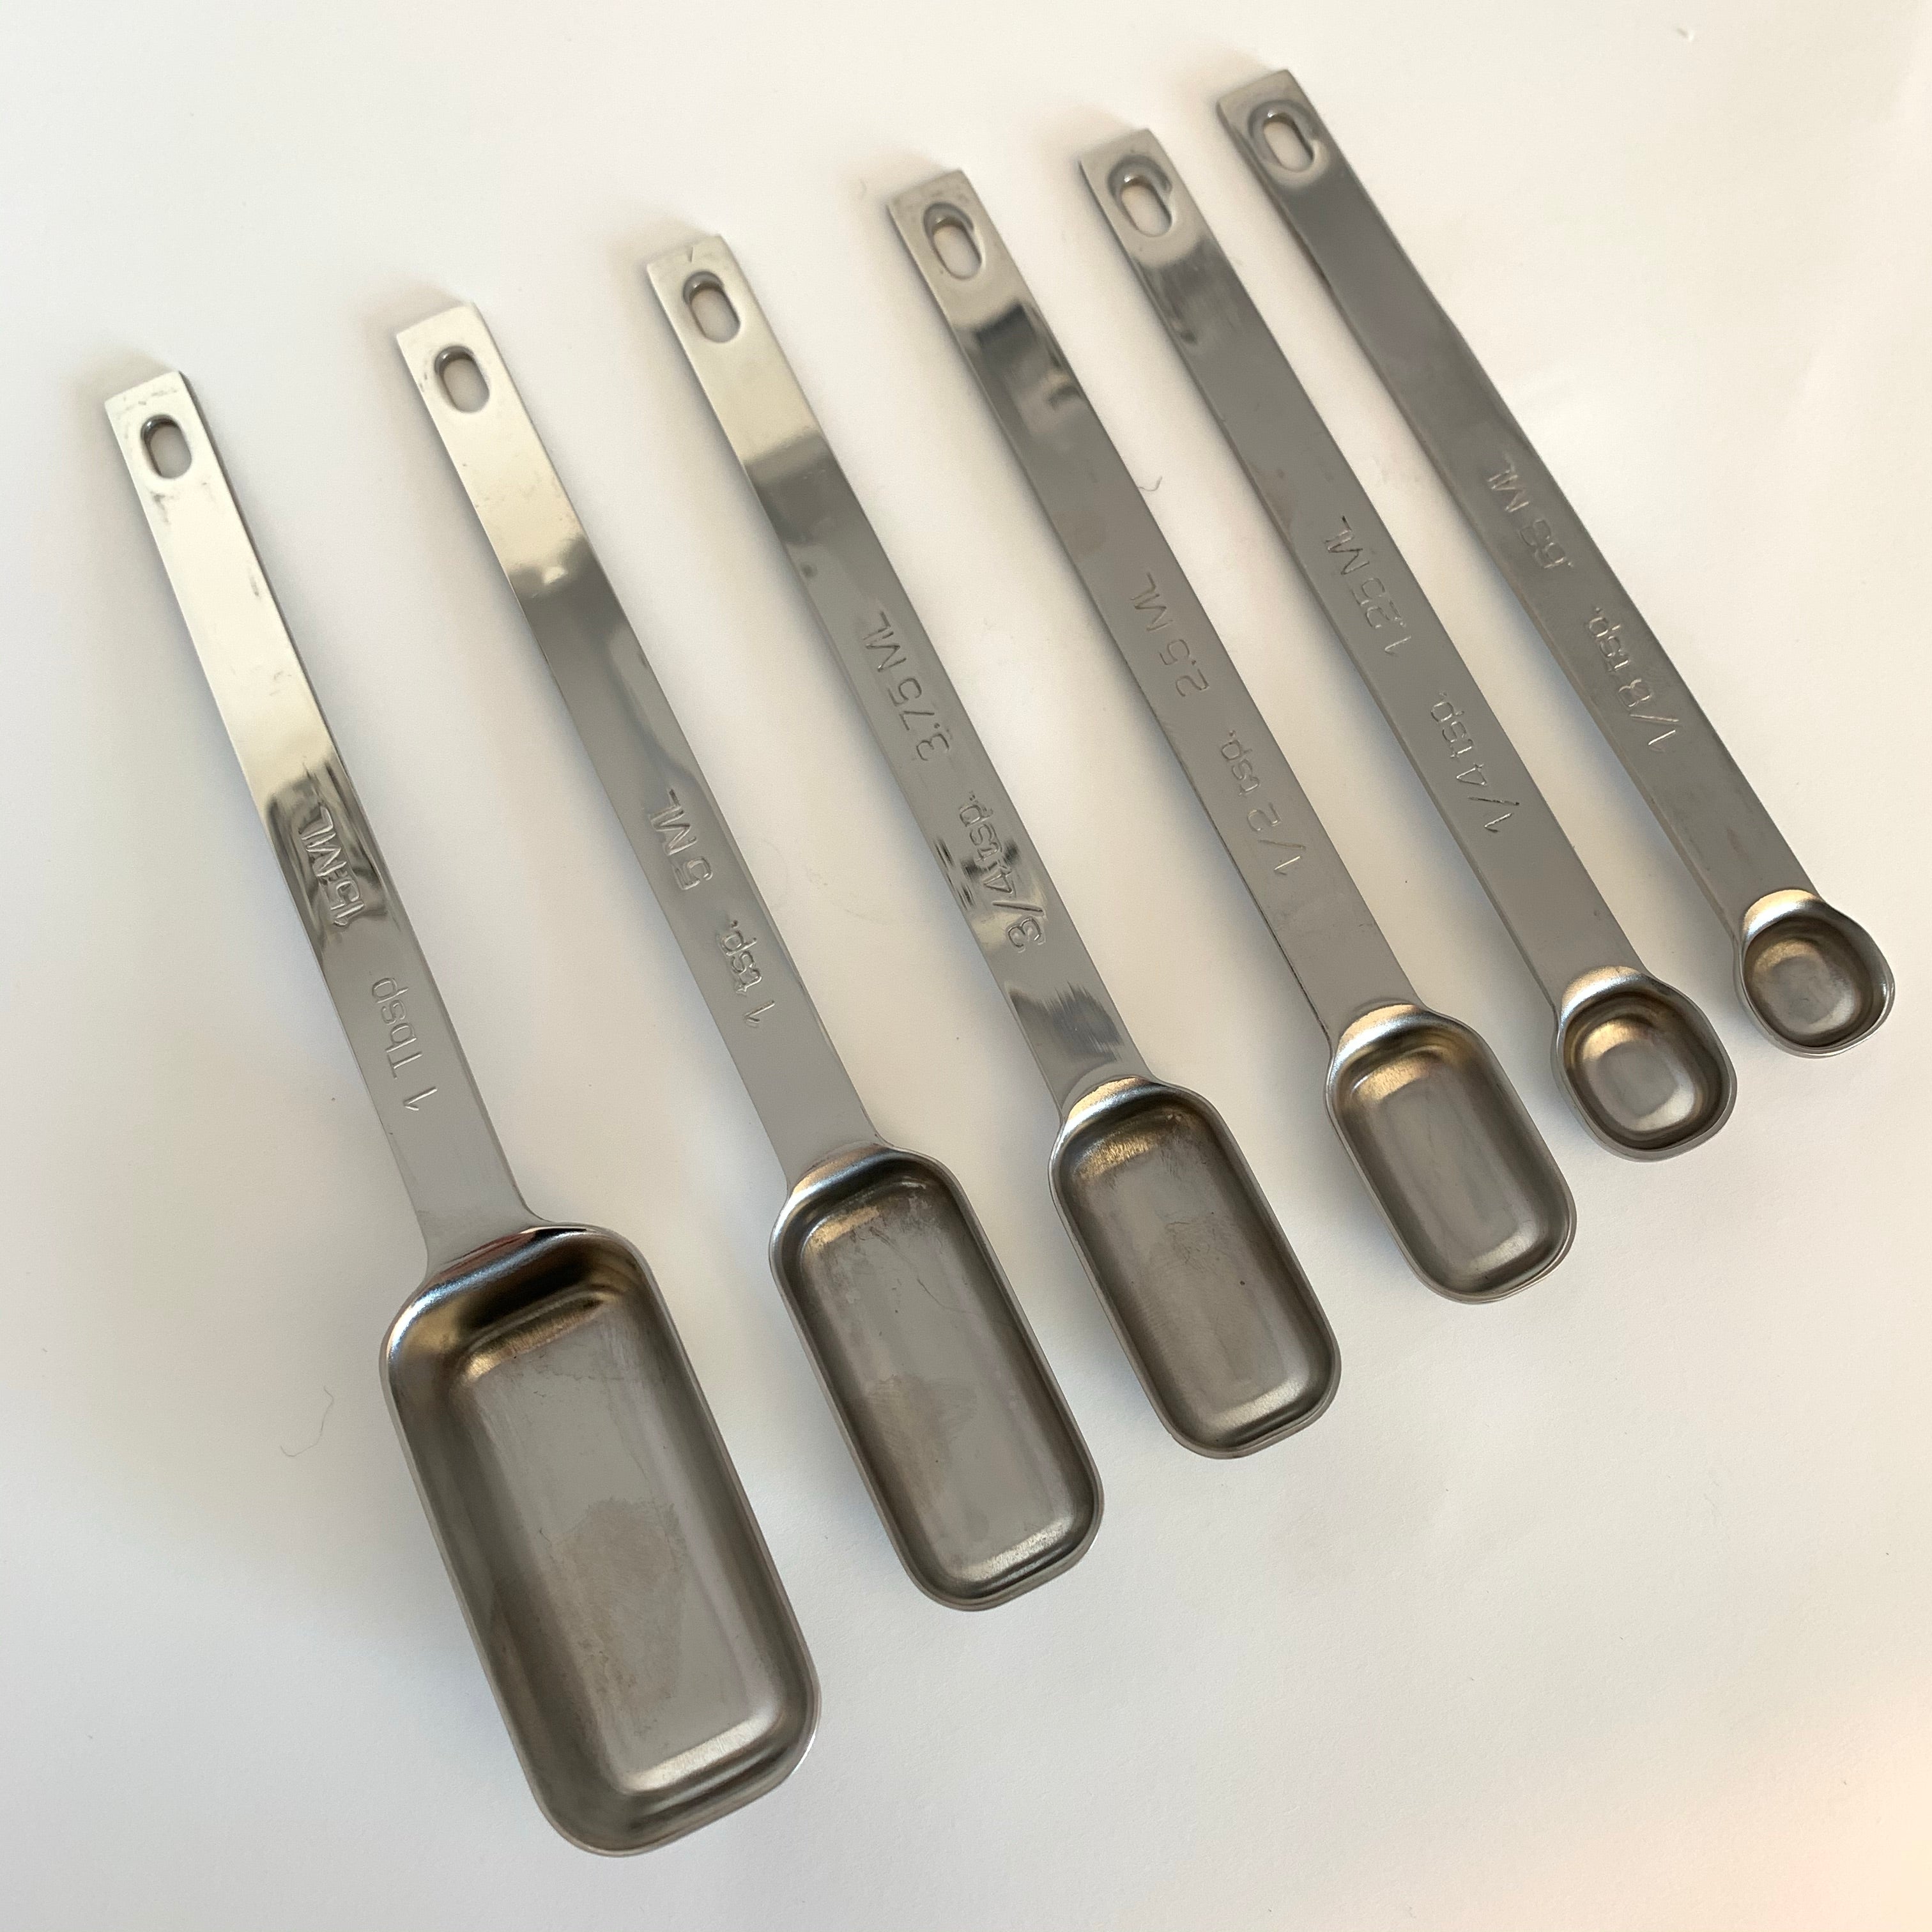 RSVP Stainless Steel 1 TBSP Measuring Spoon